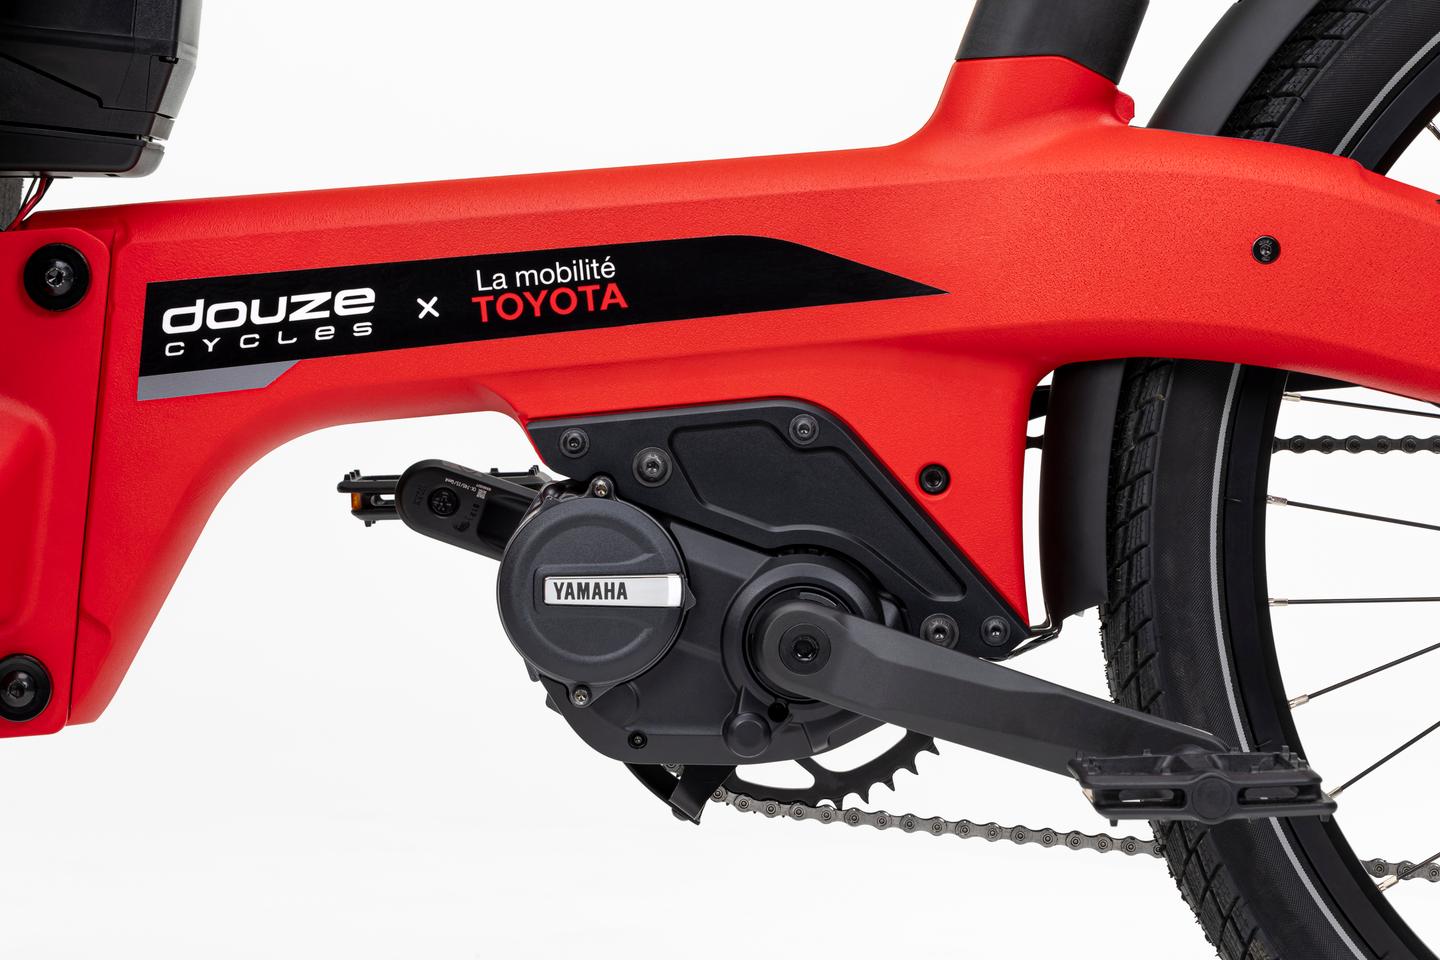 شرکت سازنده دوچرخه باری فرانسوی Douze Cycles در یک همکاری مشترک قصد دارد یک دوچرخه جدید با قابلیت حمل بار در جلو را به بازار عرضه کند.